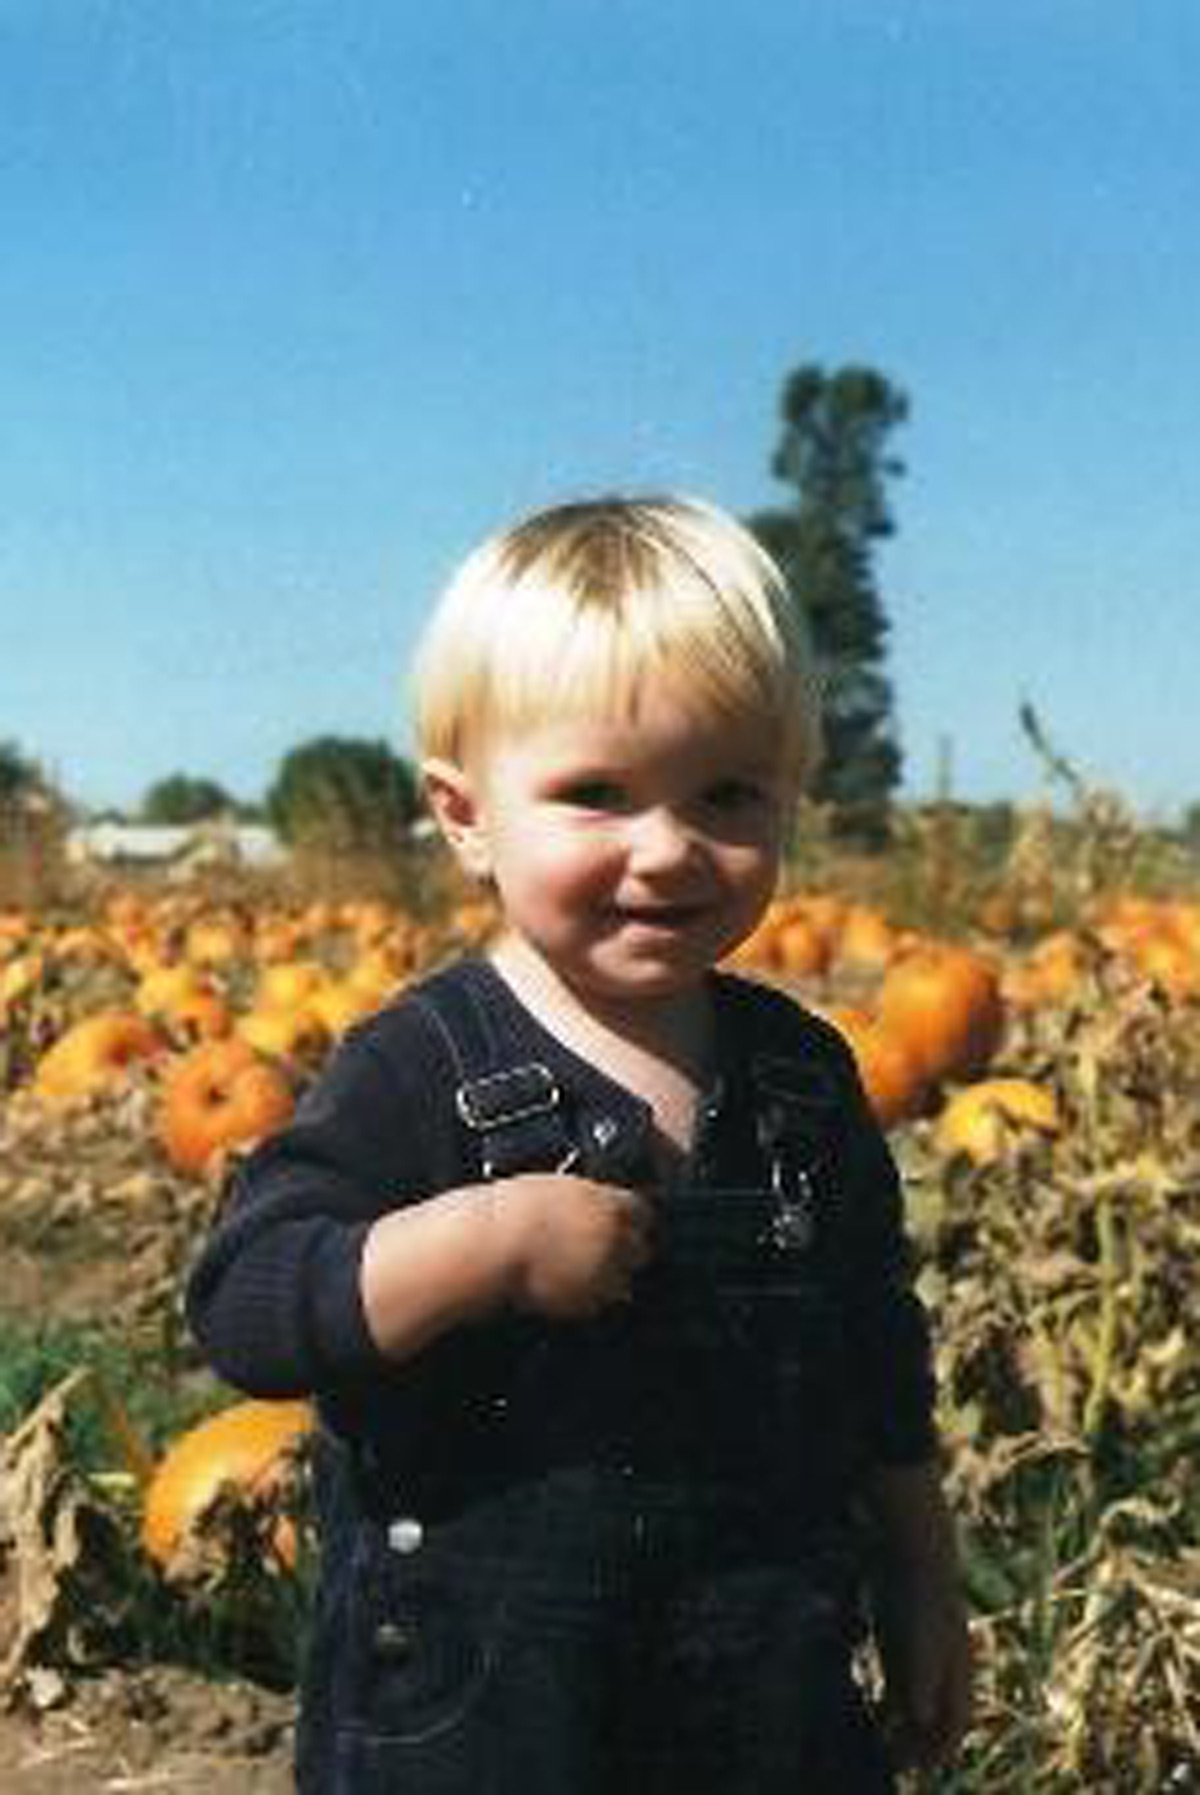 blond toddler in pumpkin patch.